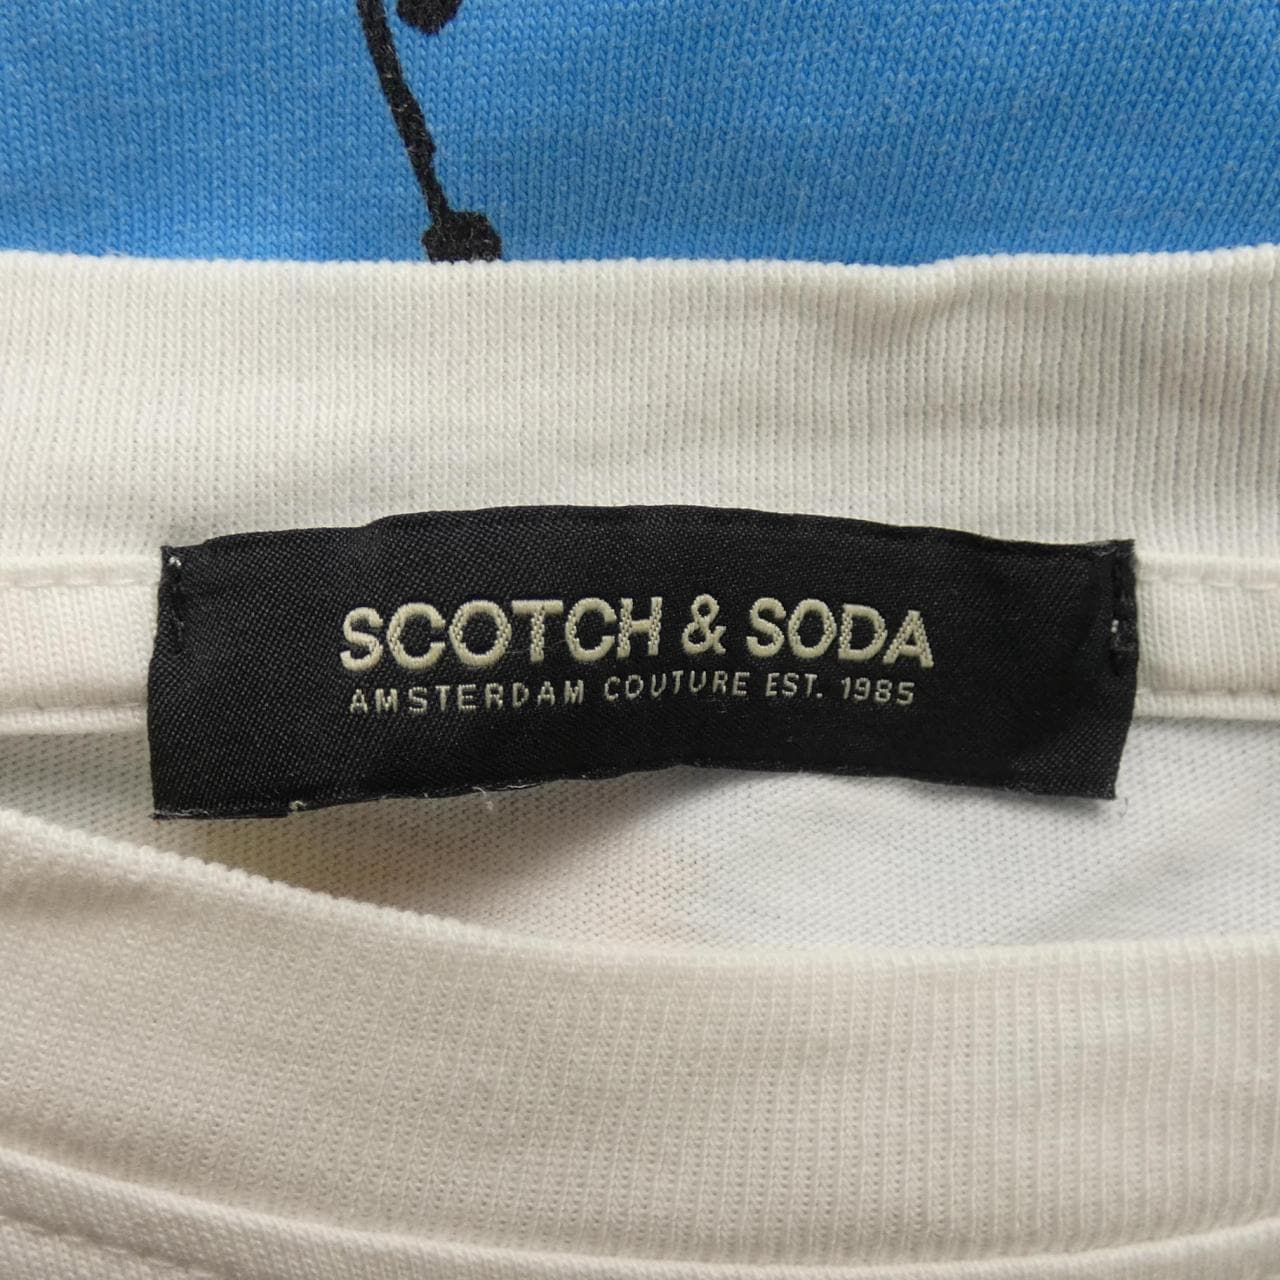 蘇格蘭威士忌和蘇打SCOTCH&SODA T恤